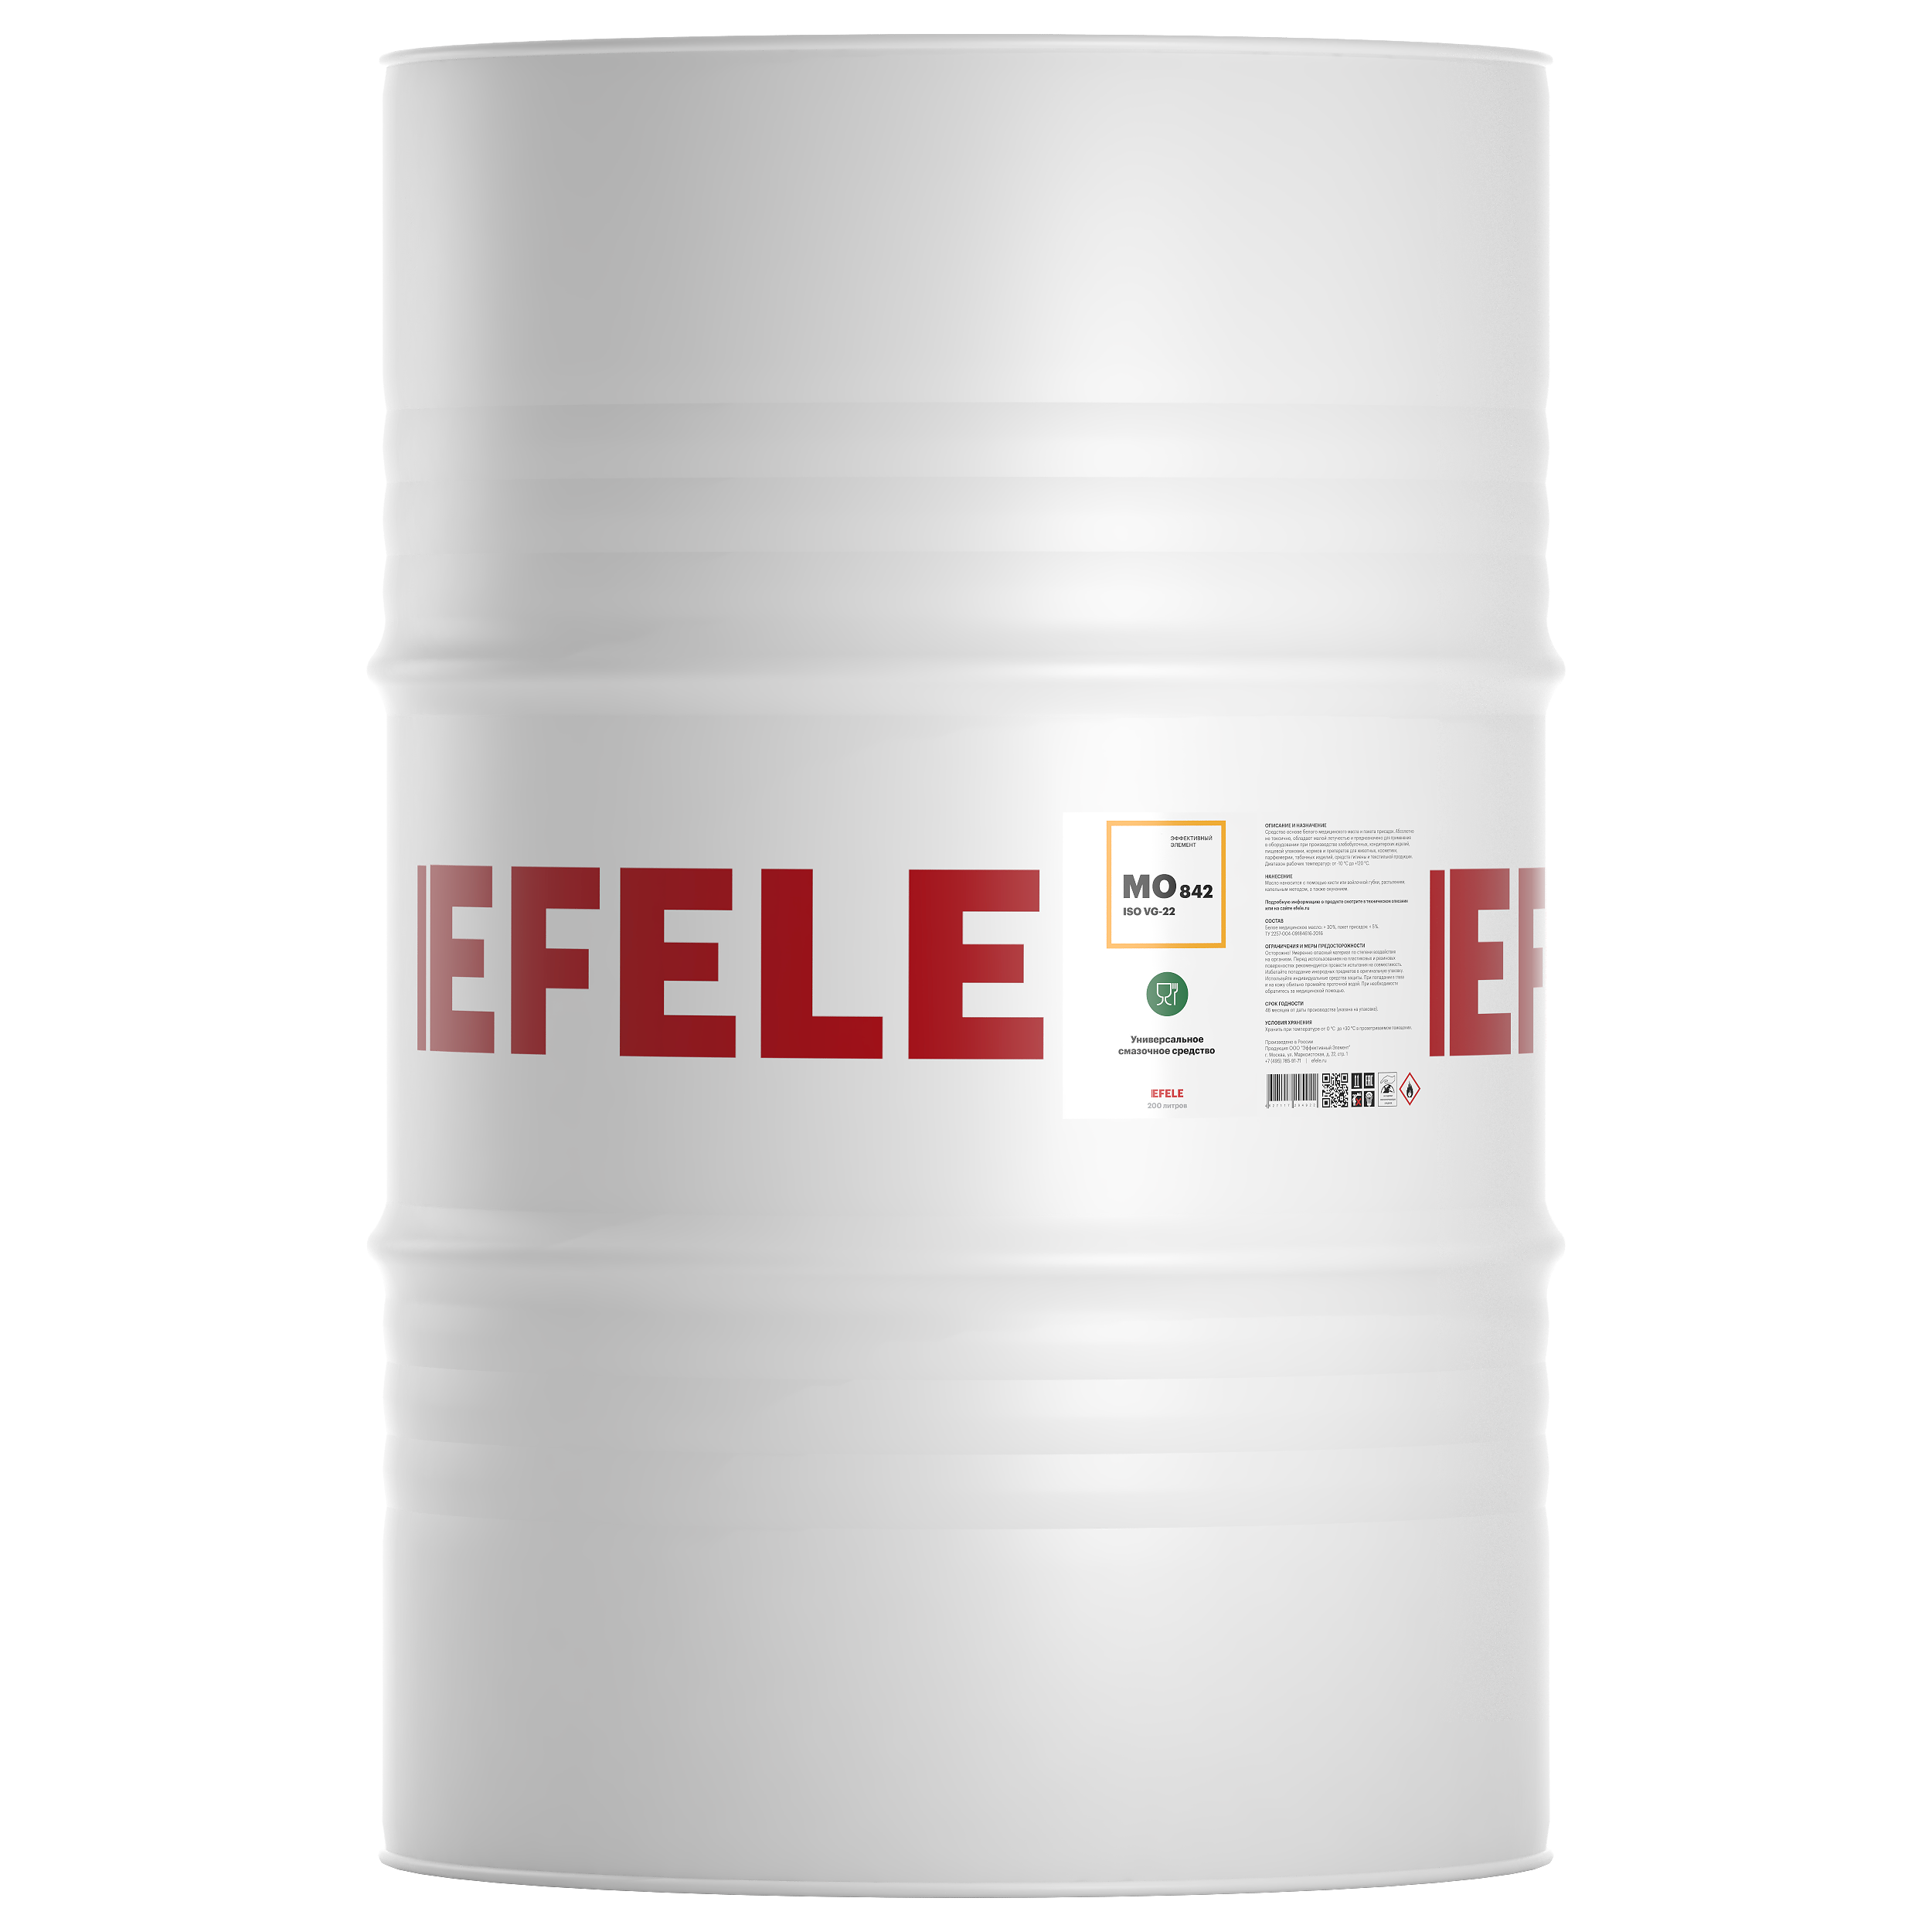 Белое масло с пищевым допуском EFELE MO-842 VG 22 (200 л)